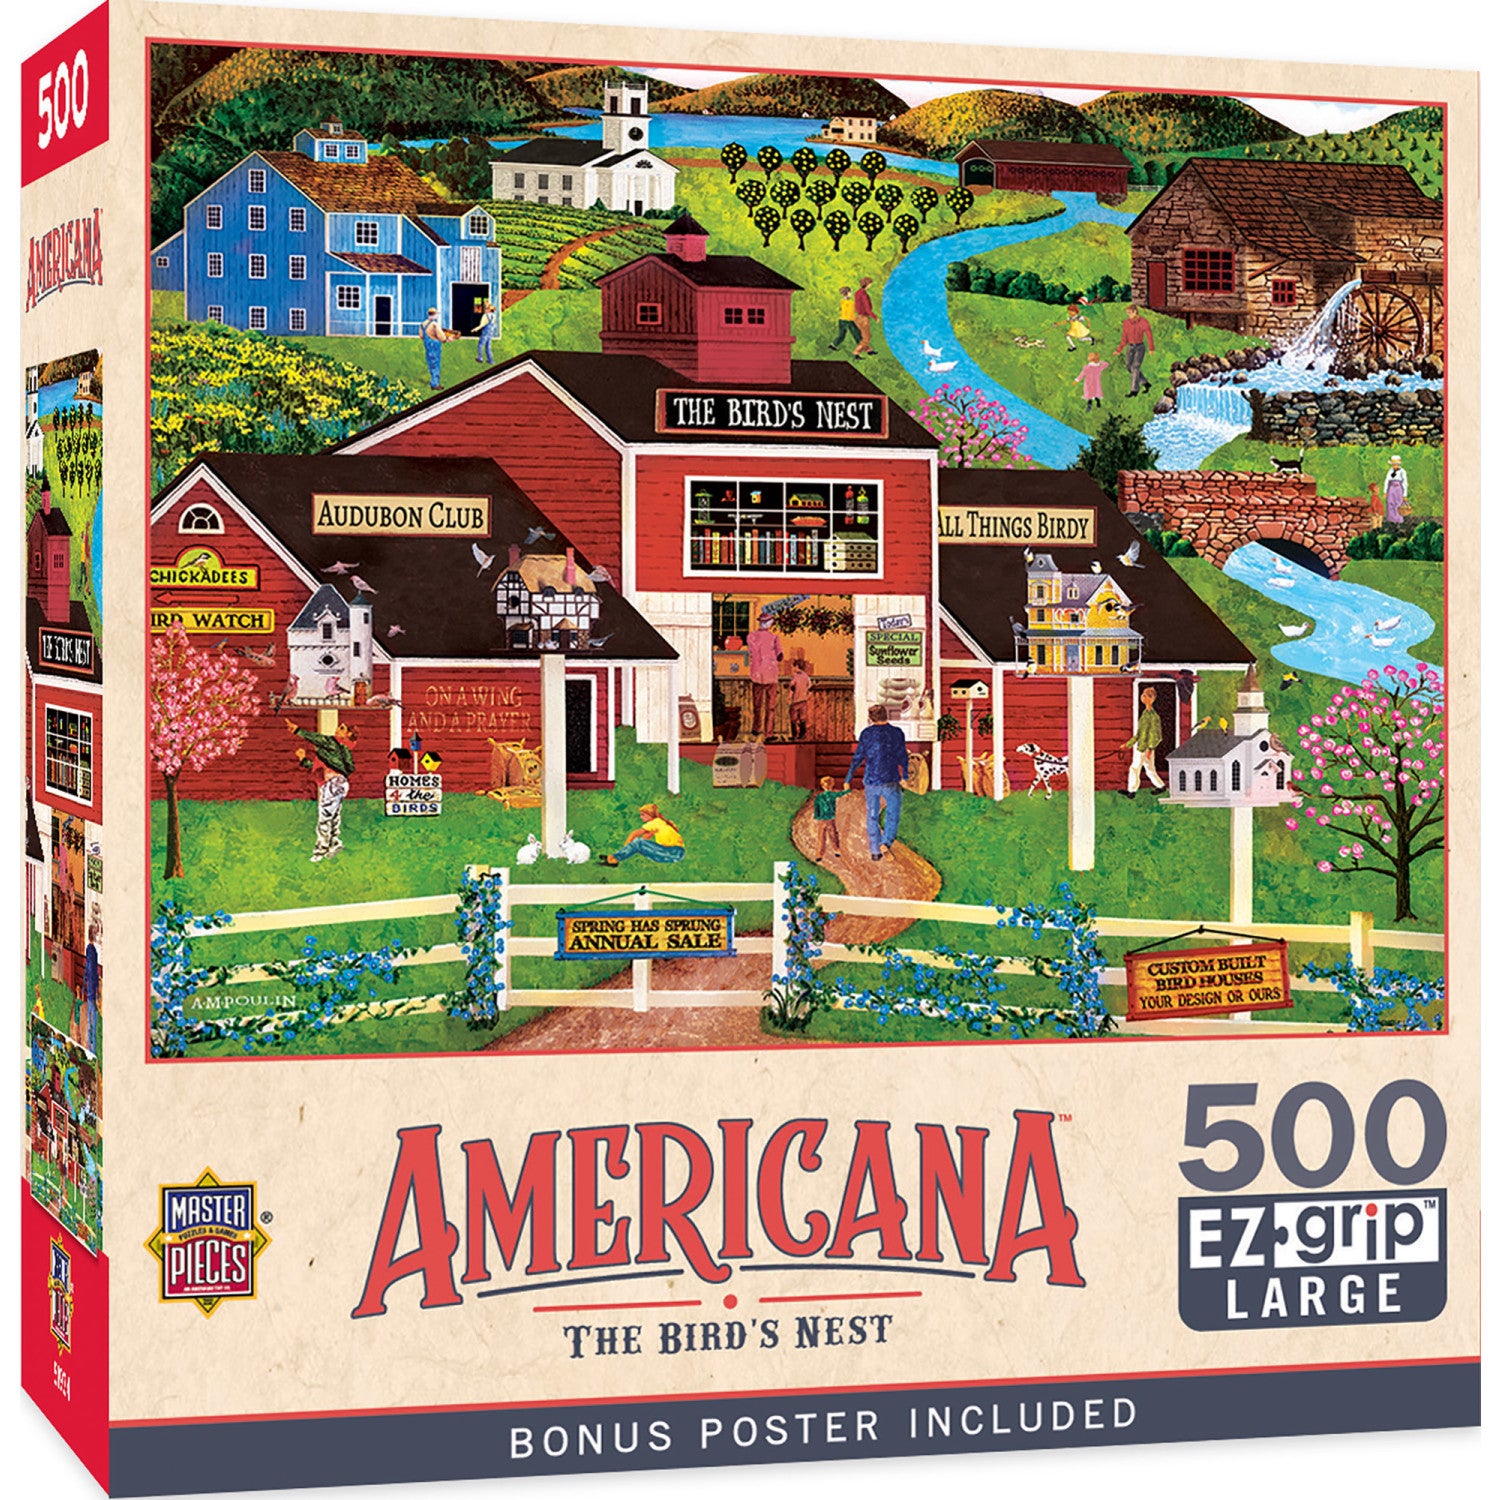 Americana - The Bird's Nest 500 Piece EZ Grip Jigsaw Puzzle